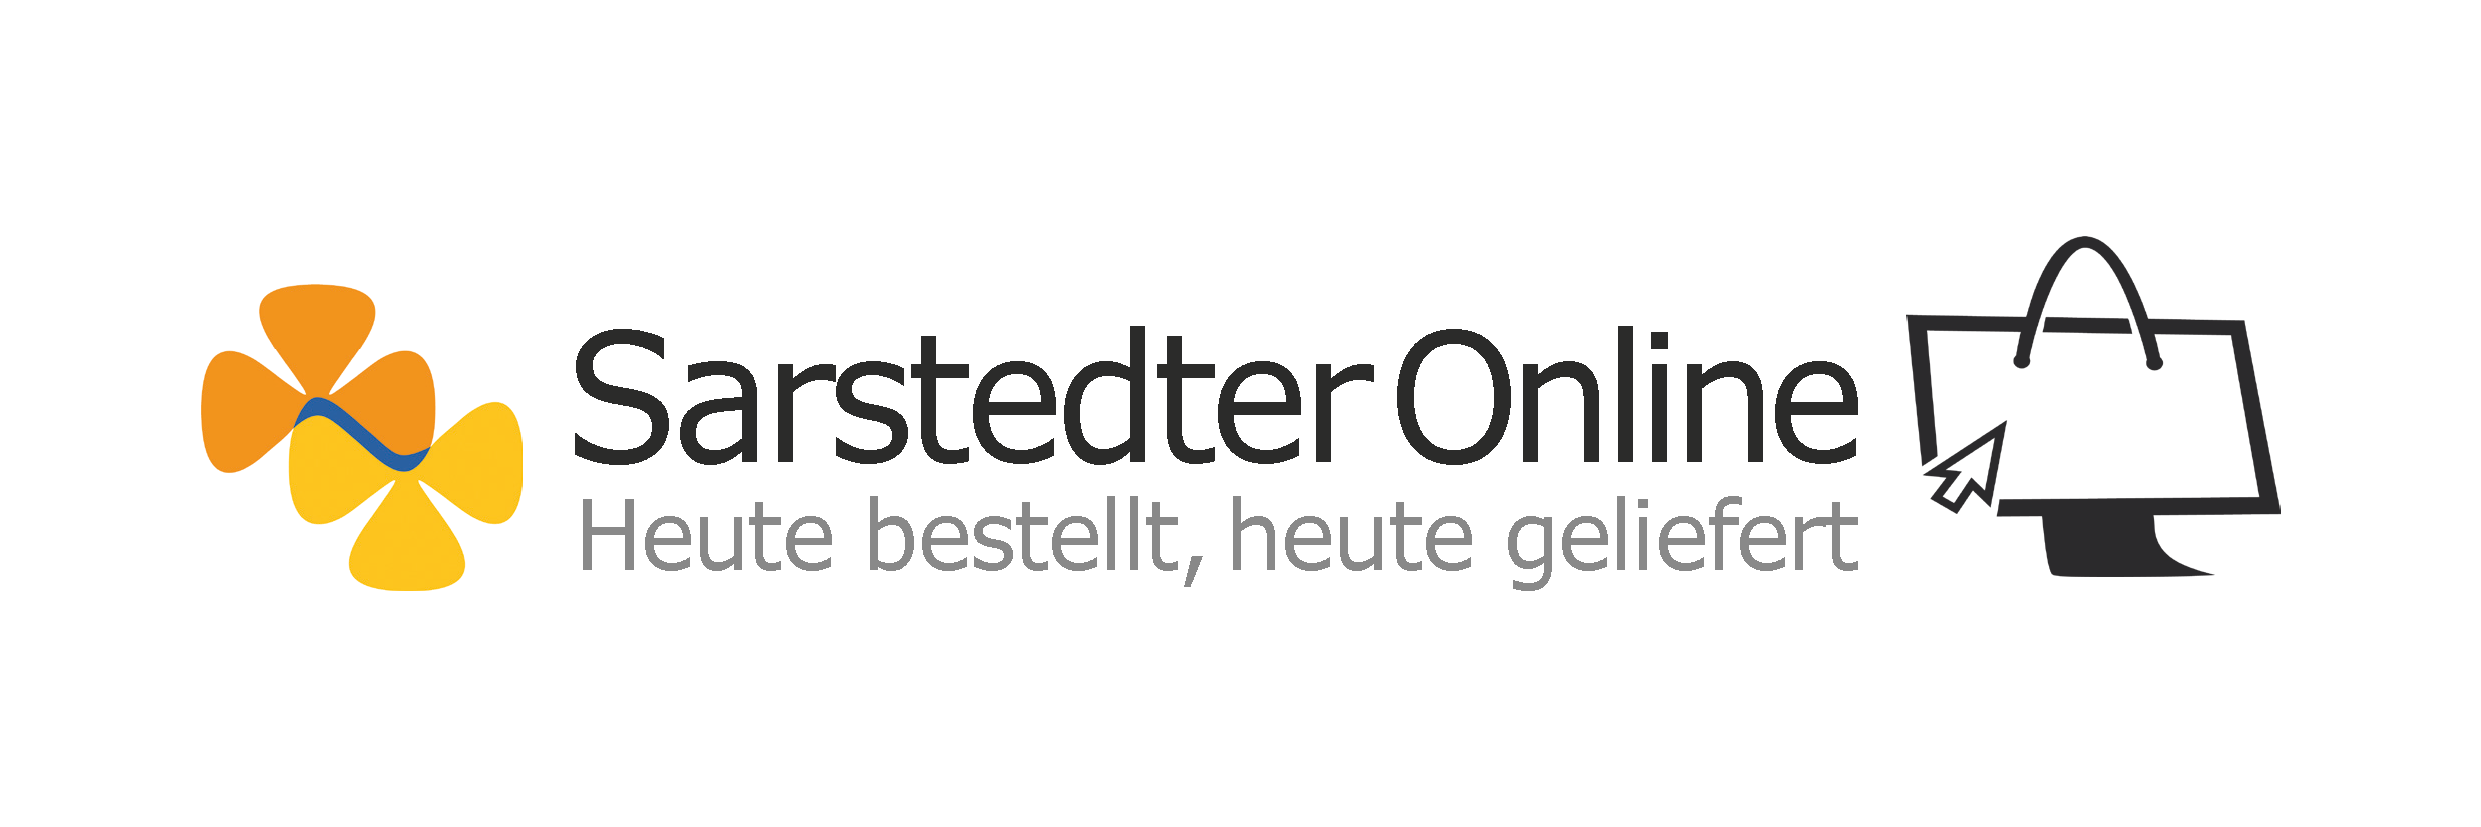 Sarstedter Online